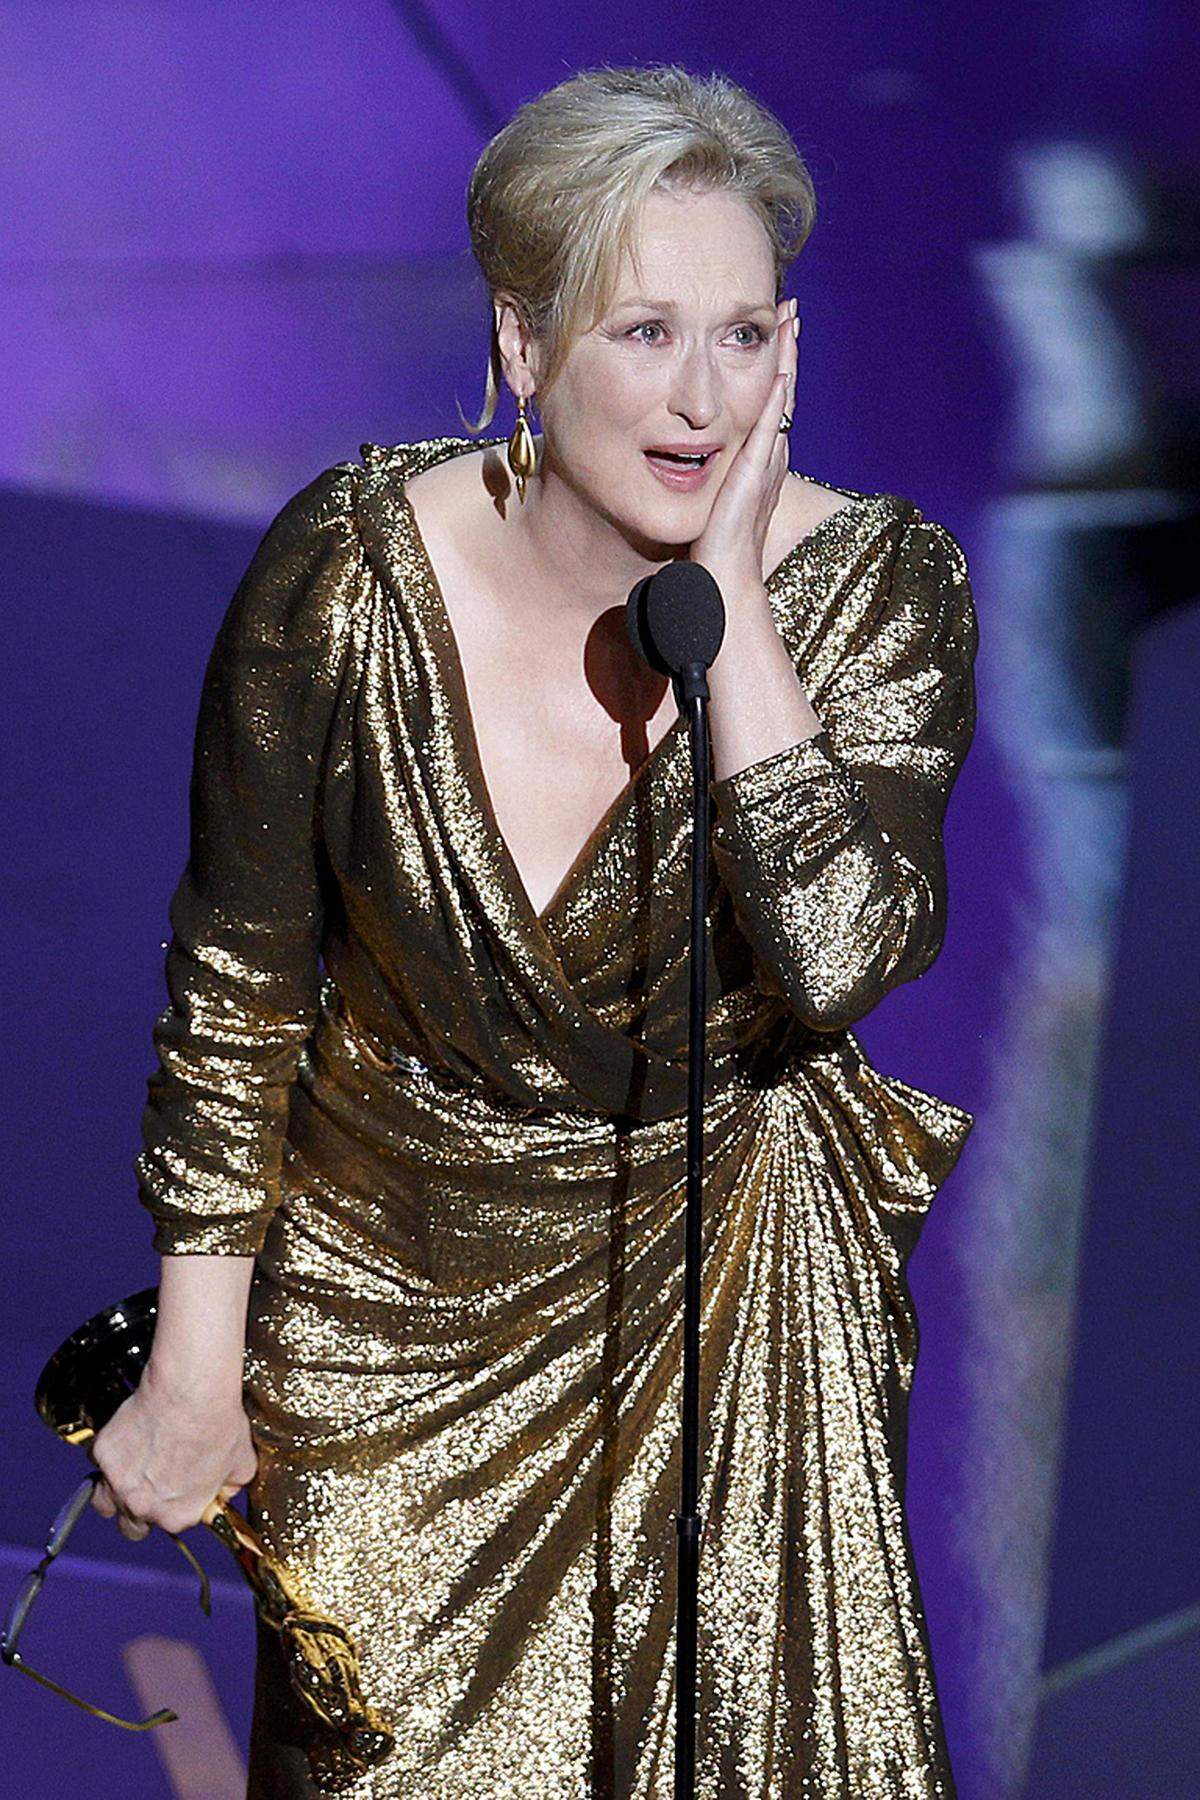 17 Mal war Meryl Streep bereits nominiert, heuer holte sie sich ihren dritten Oscar – nach 1980 für "Kramer gegen Kramer" und 1983 für "Sophies Entscheidung". Sie wurde für ihre Darstellung von Margaret Thatcher in "The Iron Lady" ausgezeichnet. Das Publikum erhob sich und Meryl Streep scherzte. Sie können halb Amerika sagen hören: "Come on, why her - again", meinte sie. Streep, die teils mit den Tränen kämpfte, dankte ihrem Ehemann, dem Bildhauer Don Gummer und ihren Freunden. Dabei ließ sie sich Zeit, denn "ich werde nie wieder hier oben stehen".